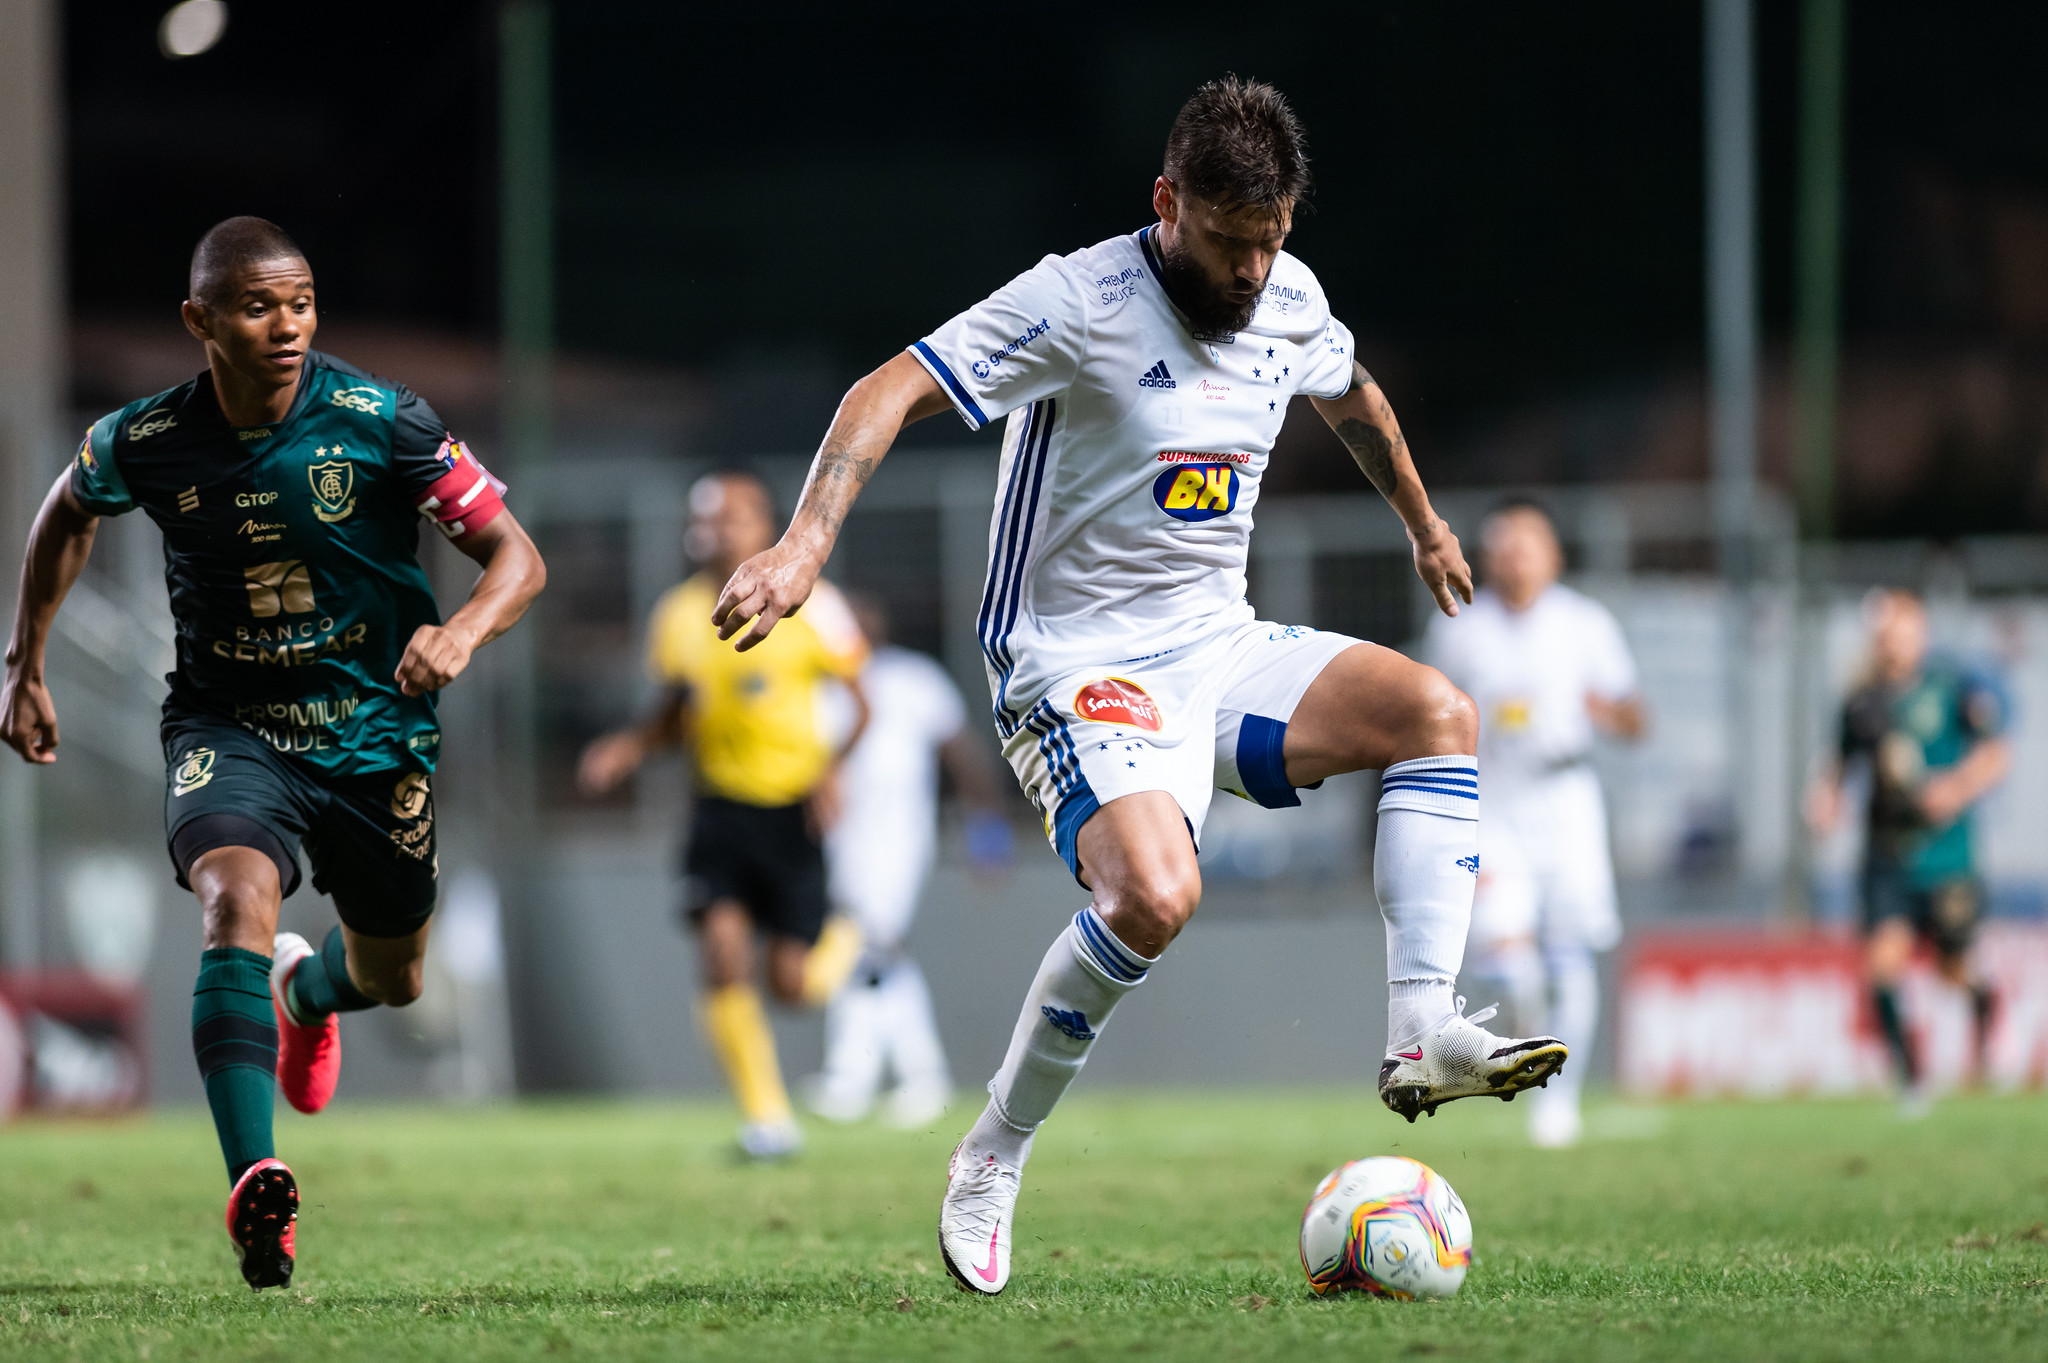 Na Série B 2020, segundo turno irregular afastou Cruzeiro do acesso; relembre campanha